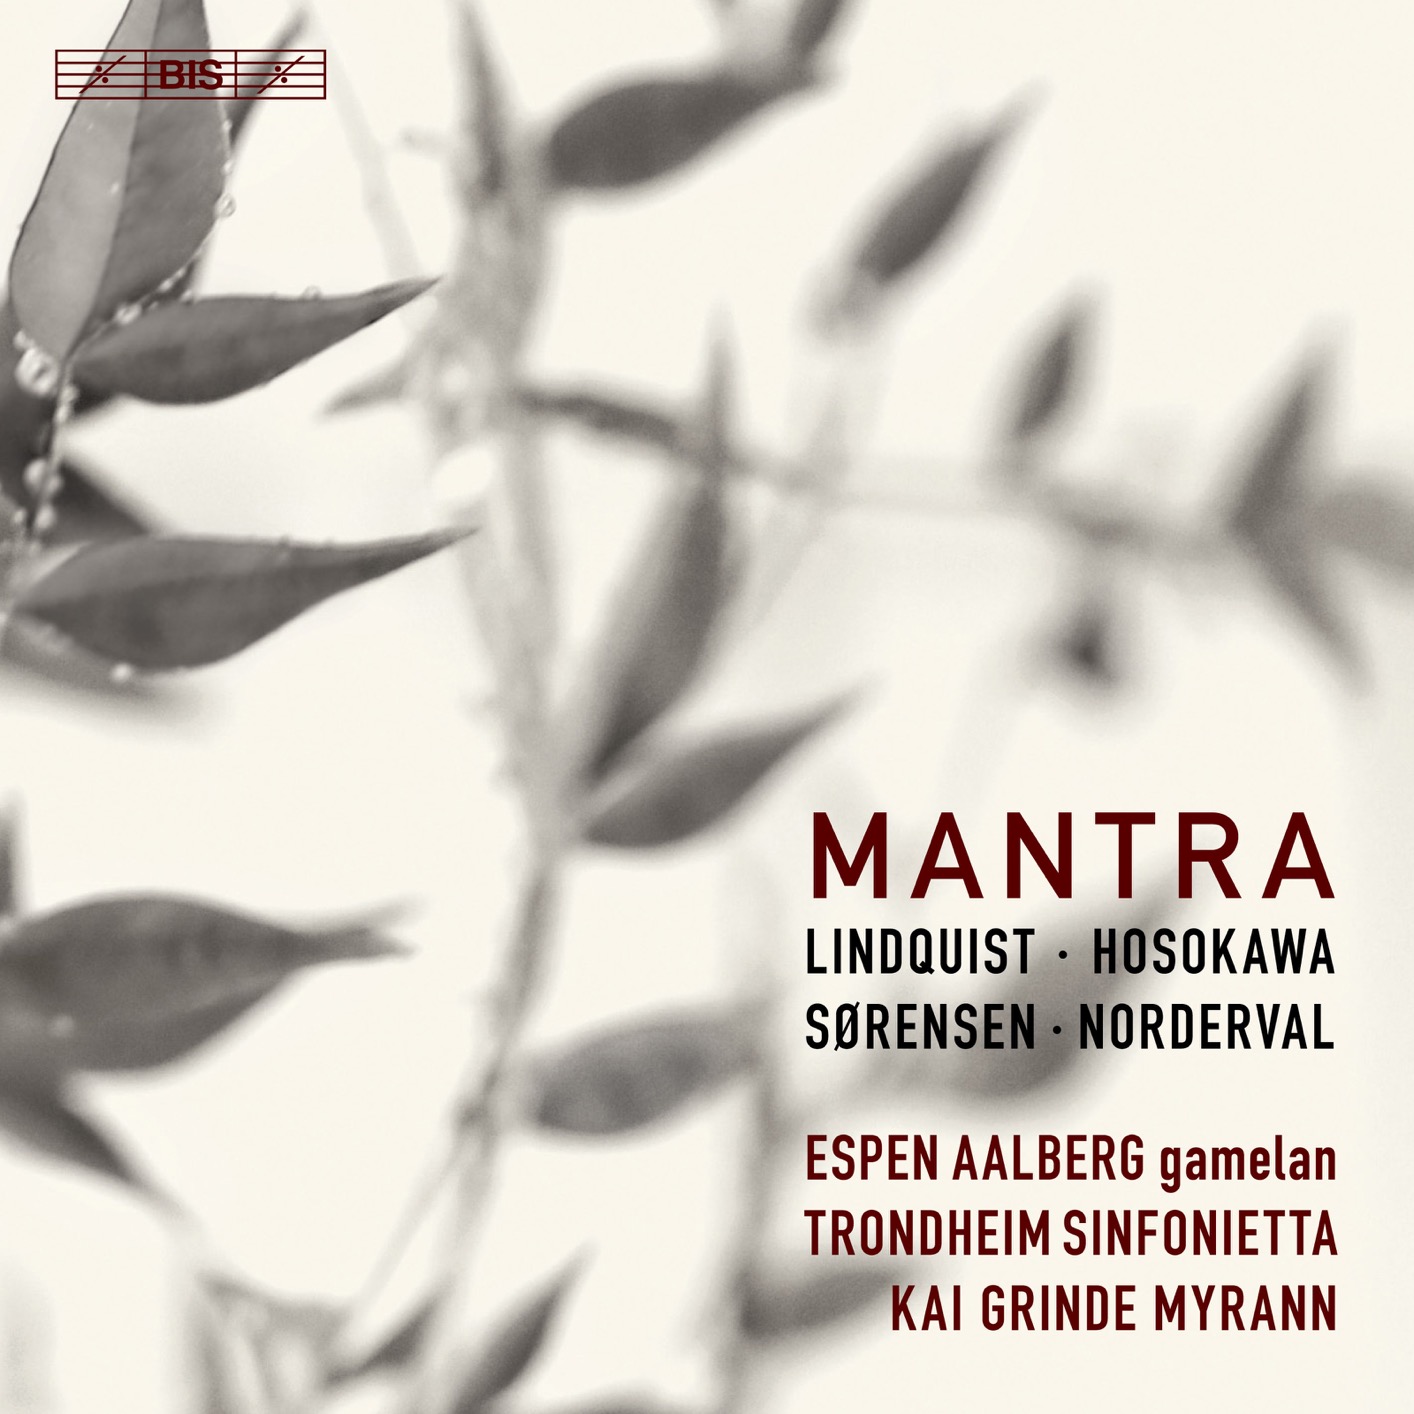 Espen Aalberg, Trondheim Sinfonietta & Kai Grinde Myrann - Mantra (2018) [FLAC 24bit/96kHz]